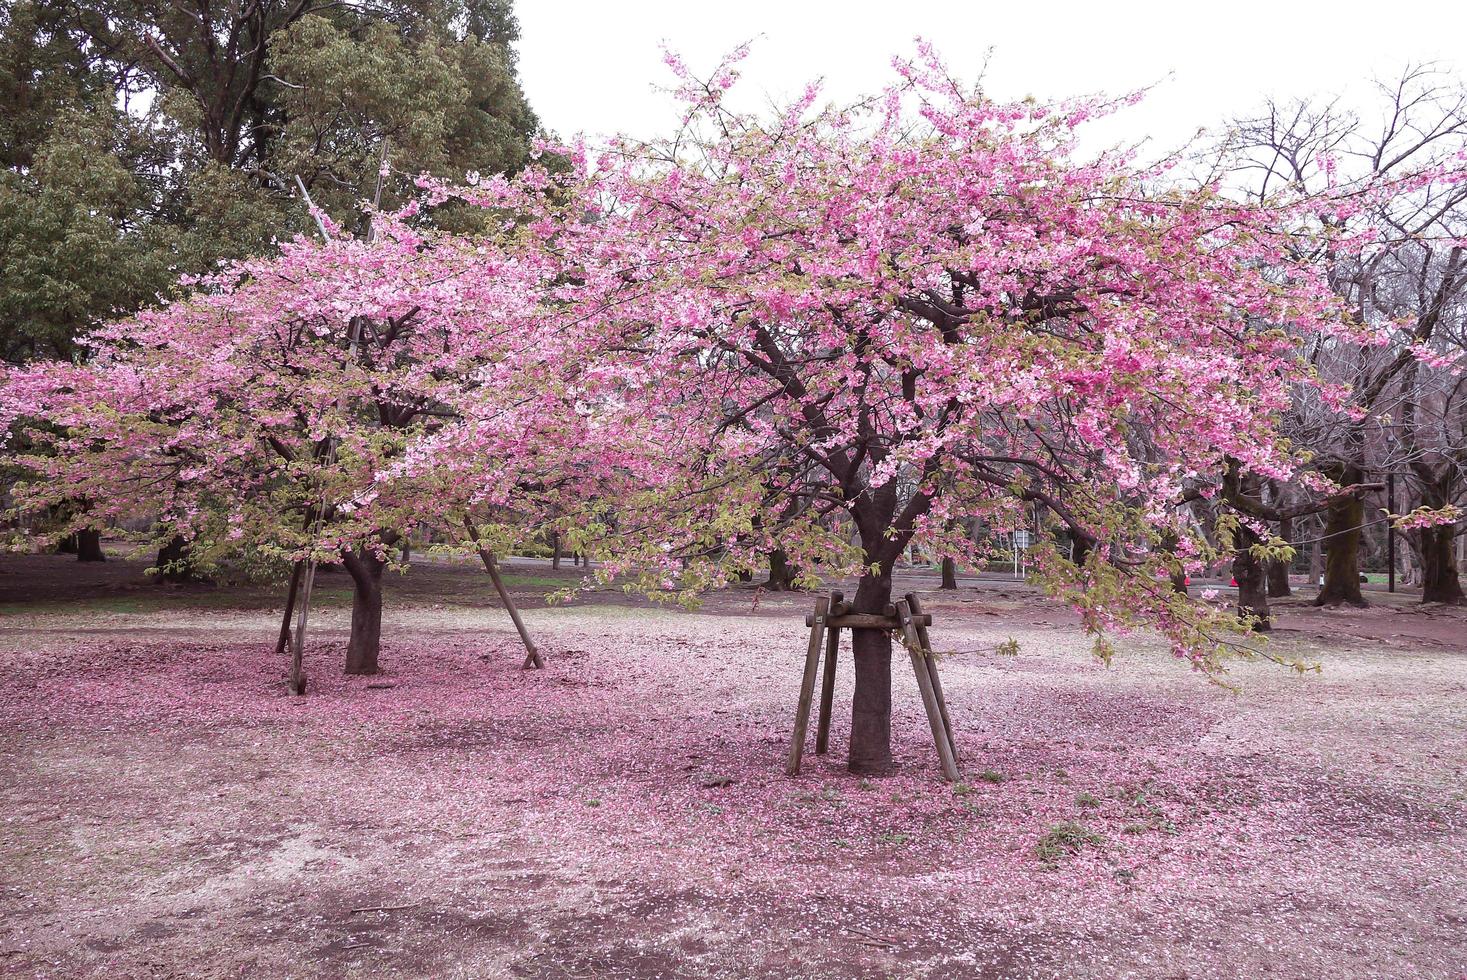 lindas flores de cerejeira rosa sakura com refrescante de manhã no japão foto